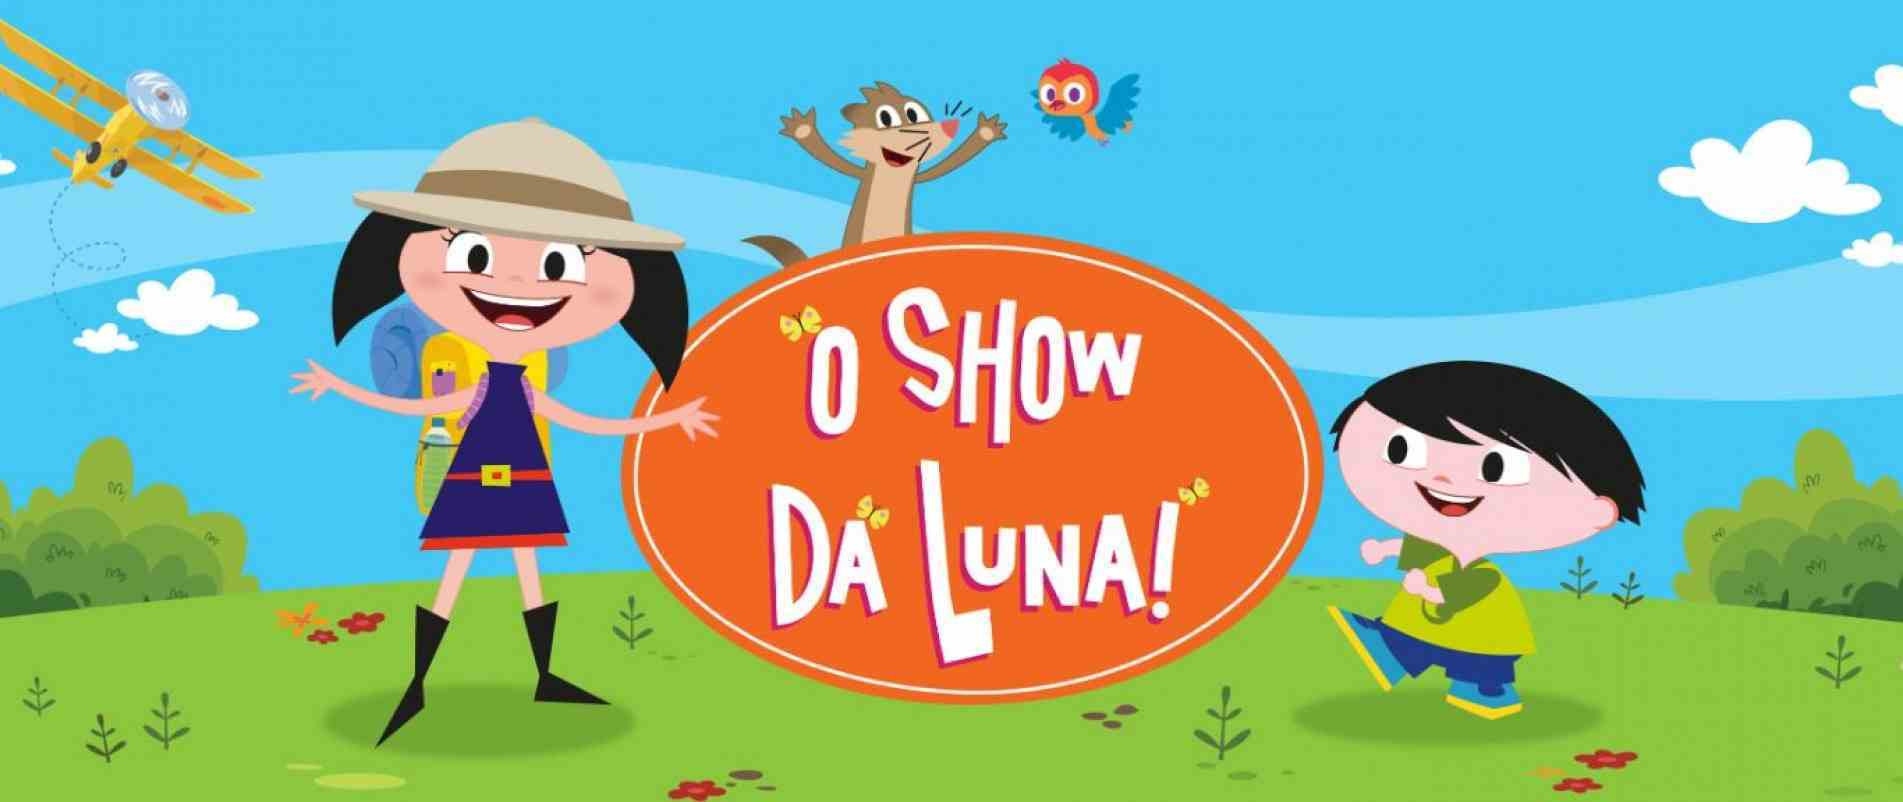 O Show da Luna é um dos filmes e séries que serão apresentados.